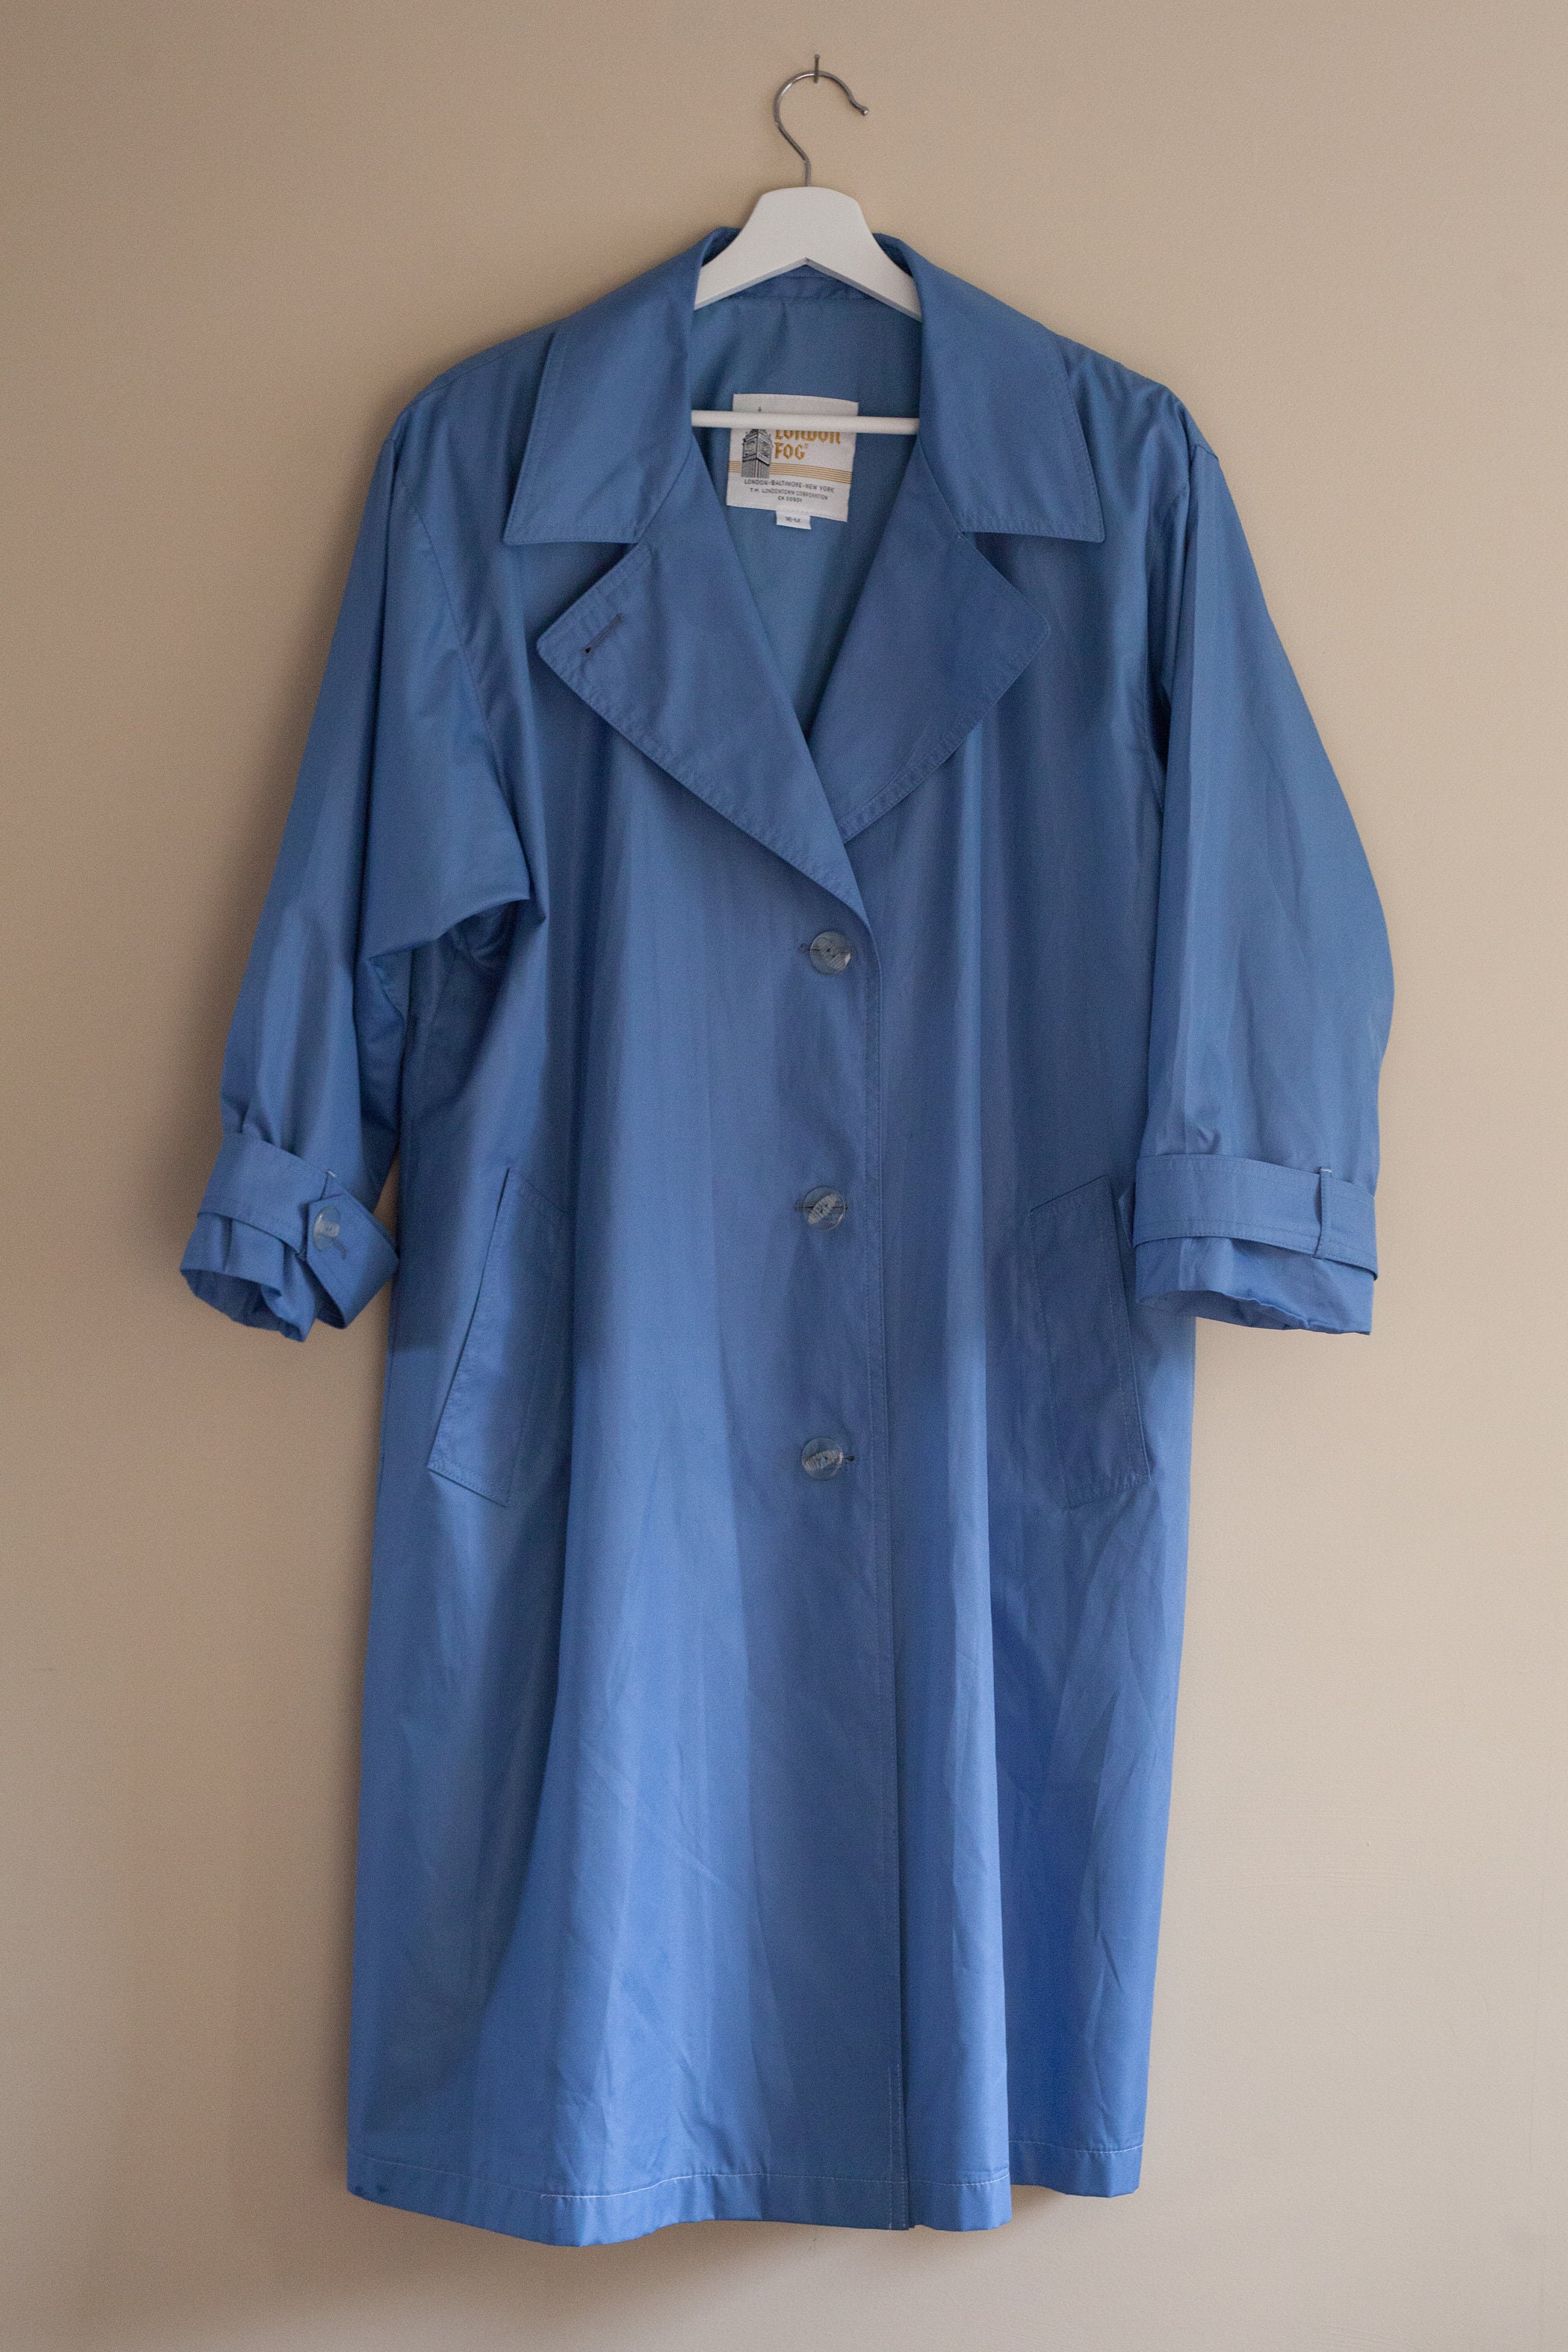 Vintage medium blue trench coat large London fog trench coat | Etsy